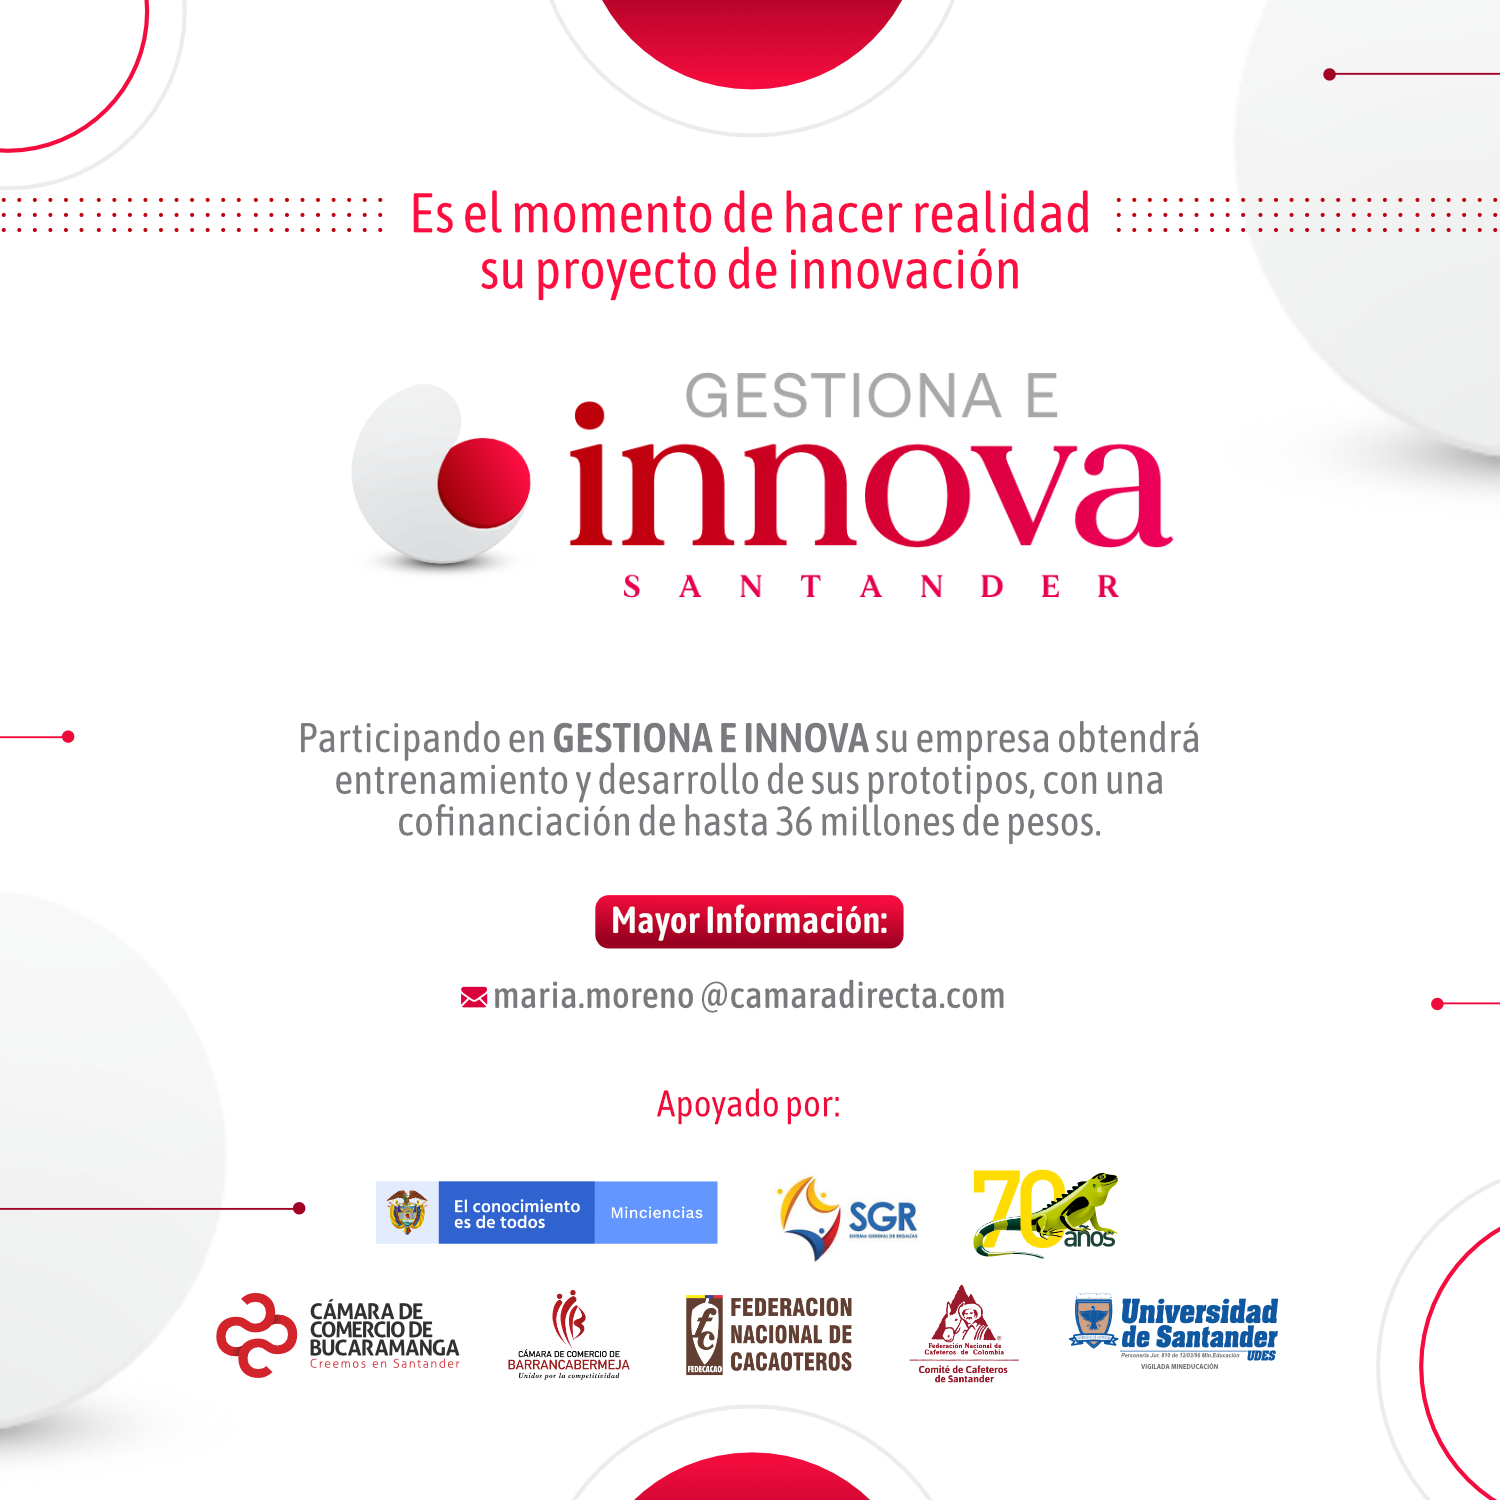 De la mano de Gestiona e Innova, los empresarios de Santander le apostarán a la innovación para ser más competitivos